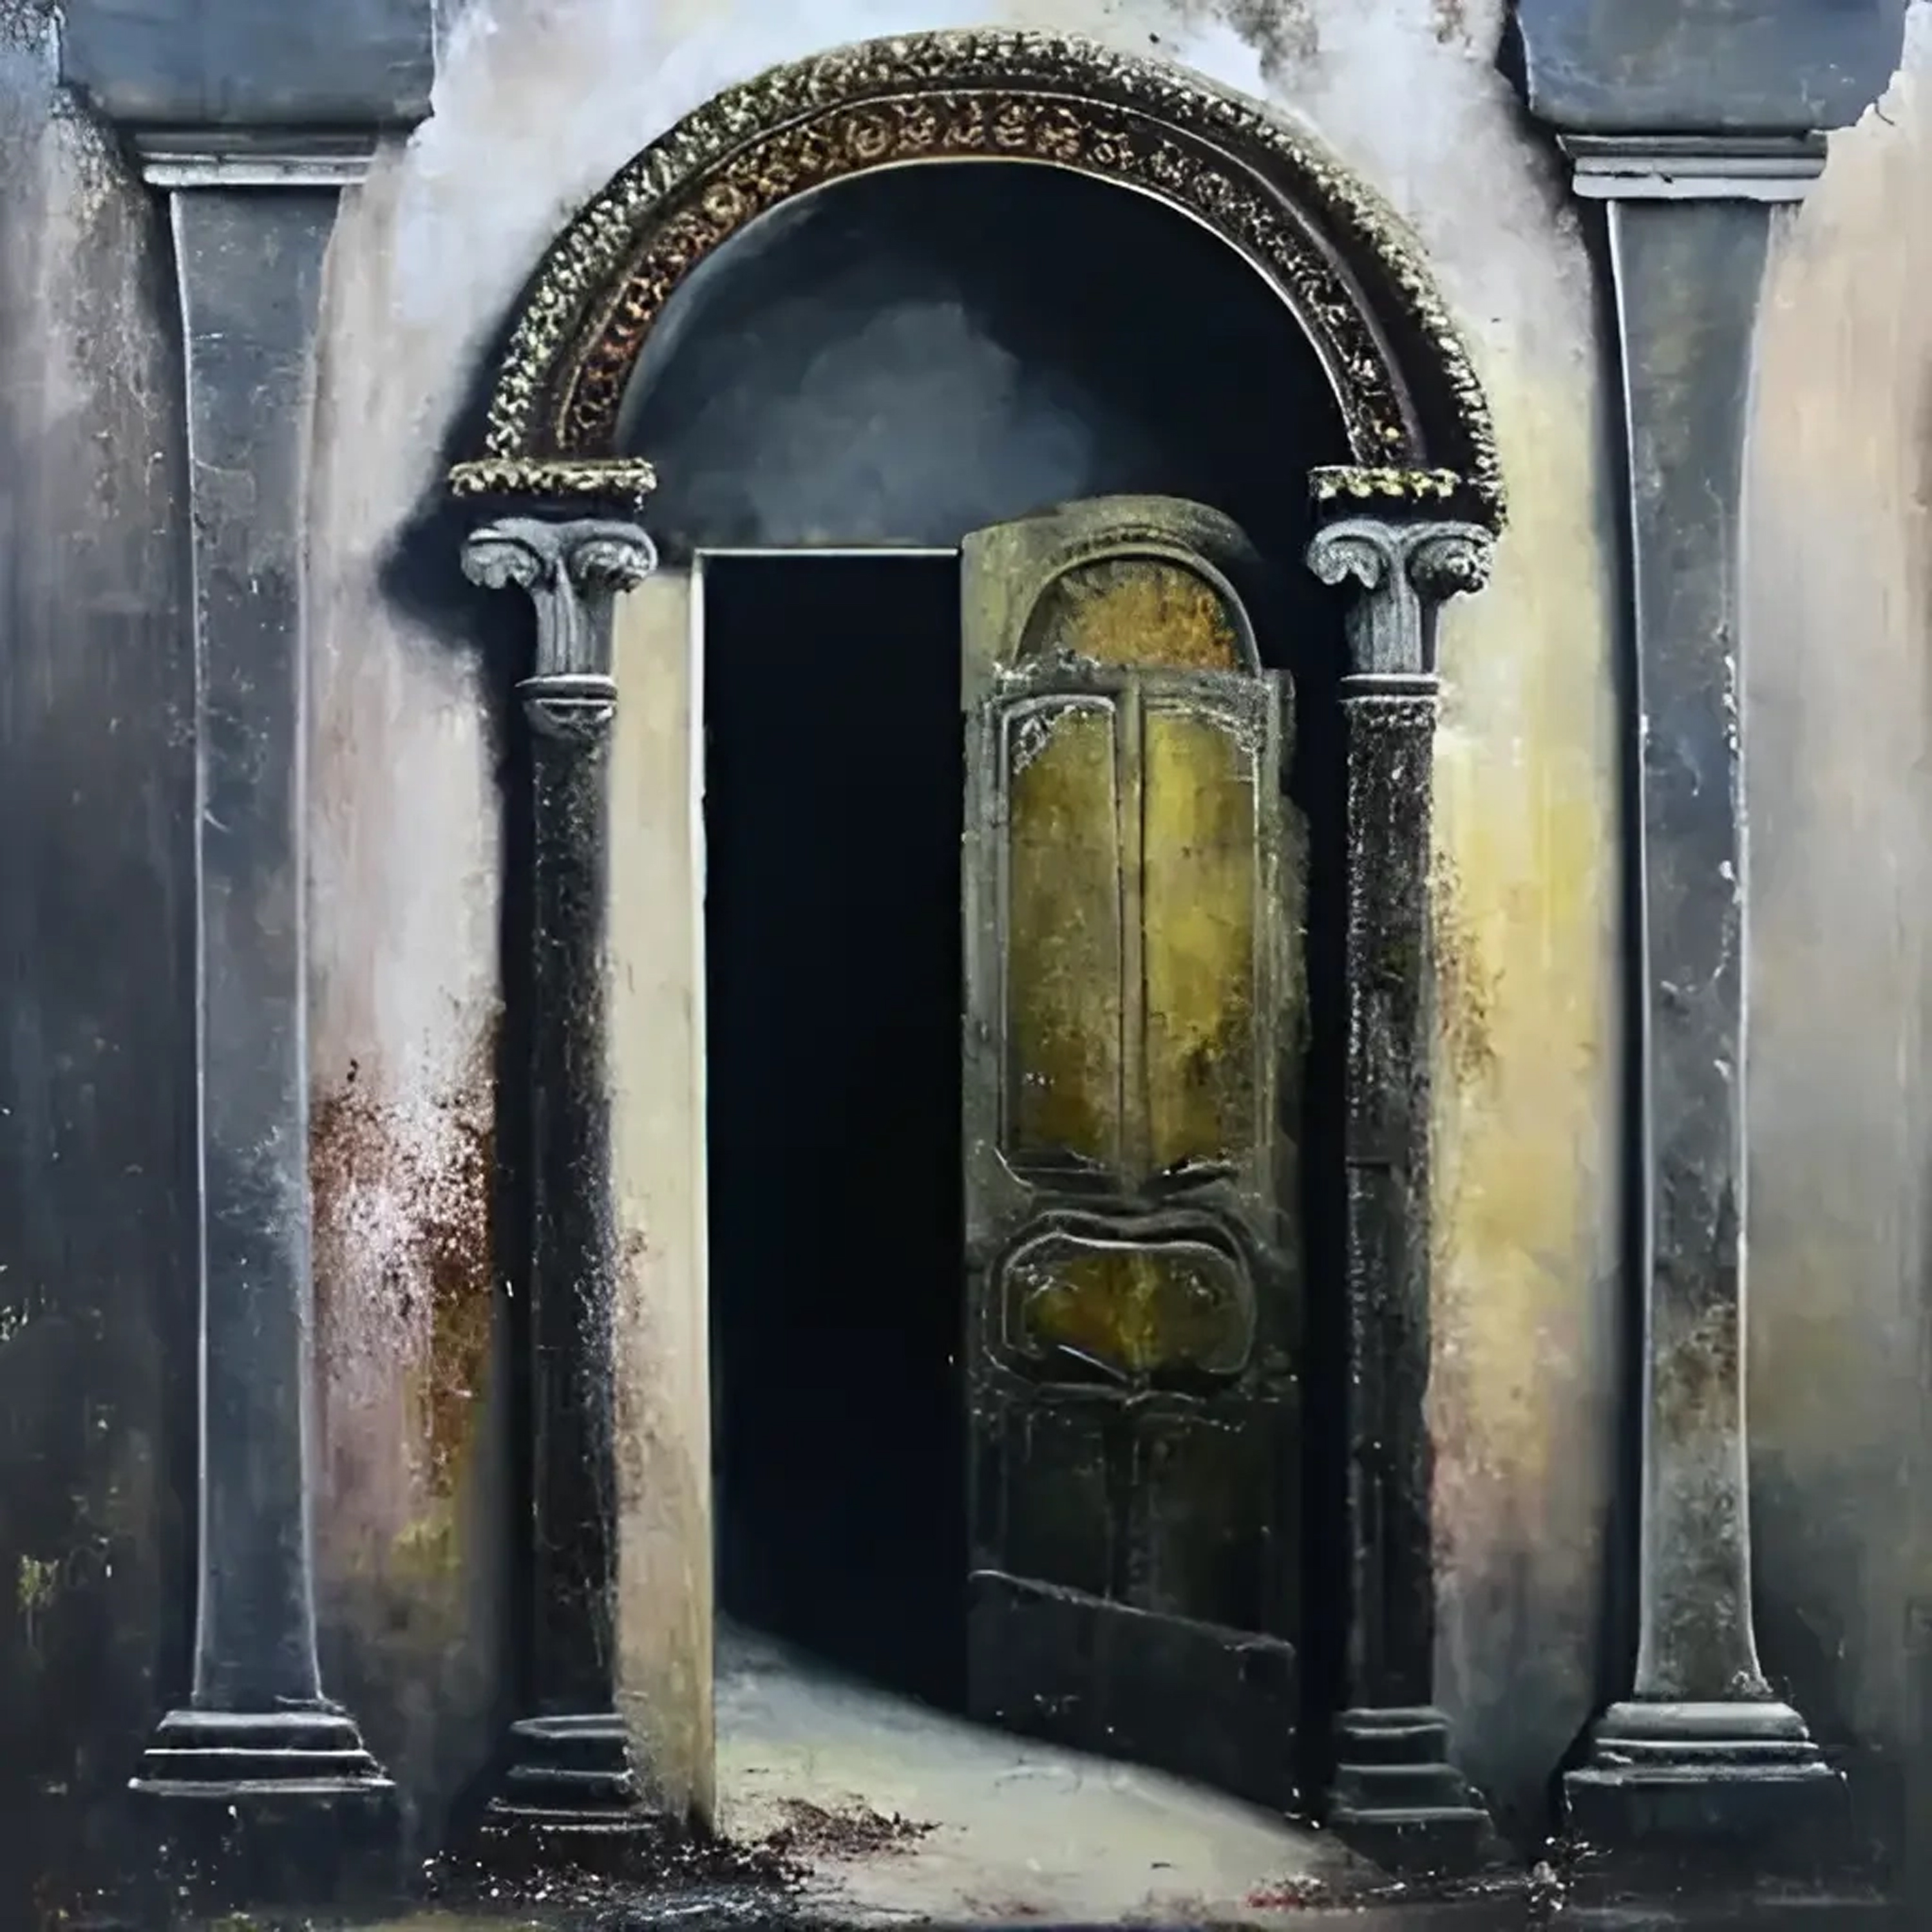 VIII - The door of XNLKX